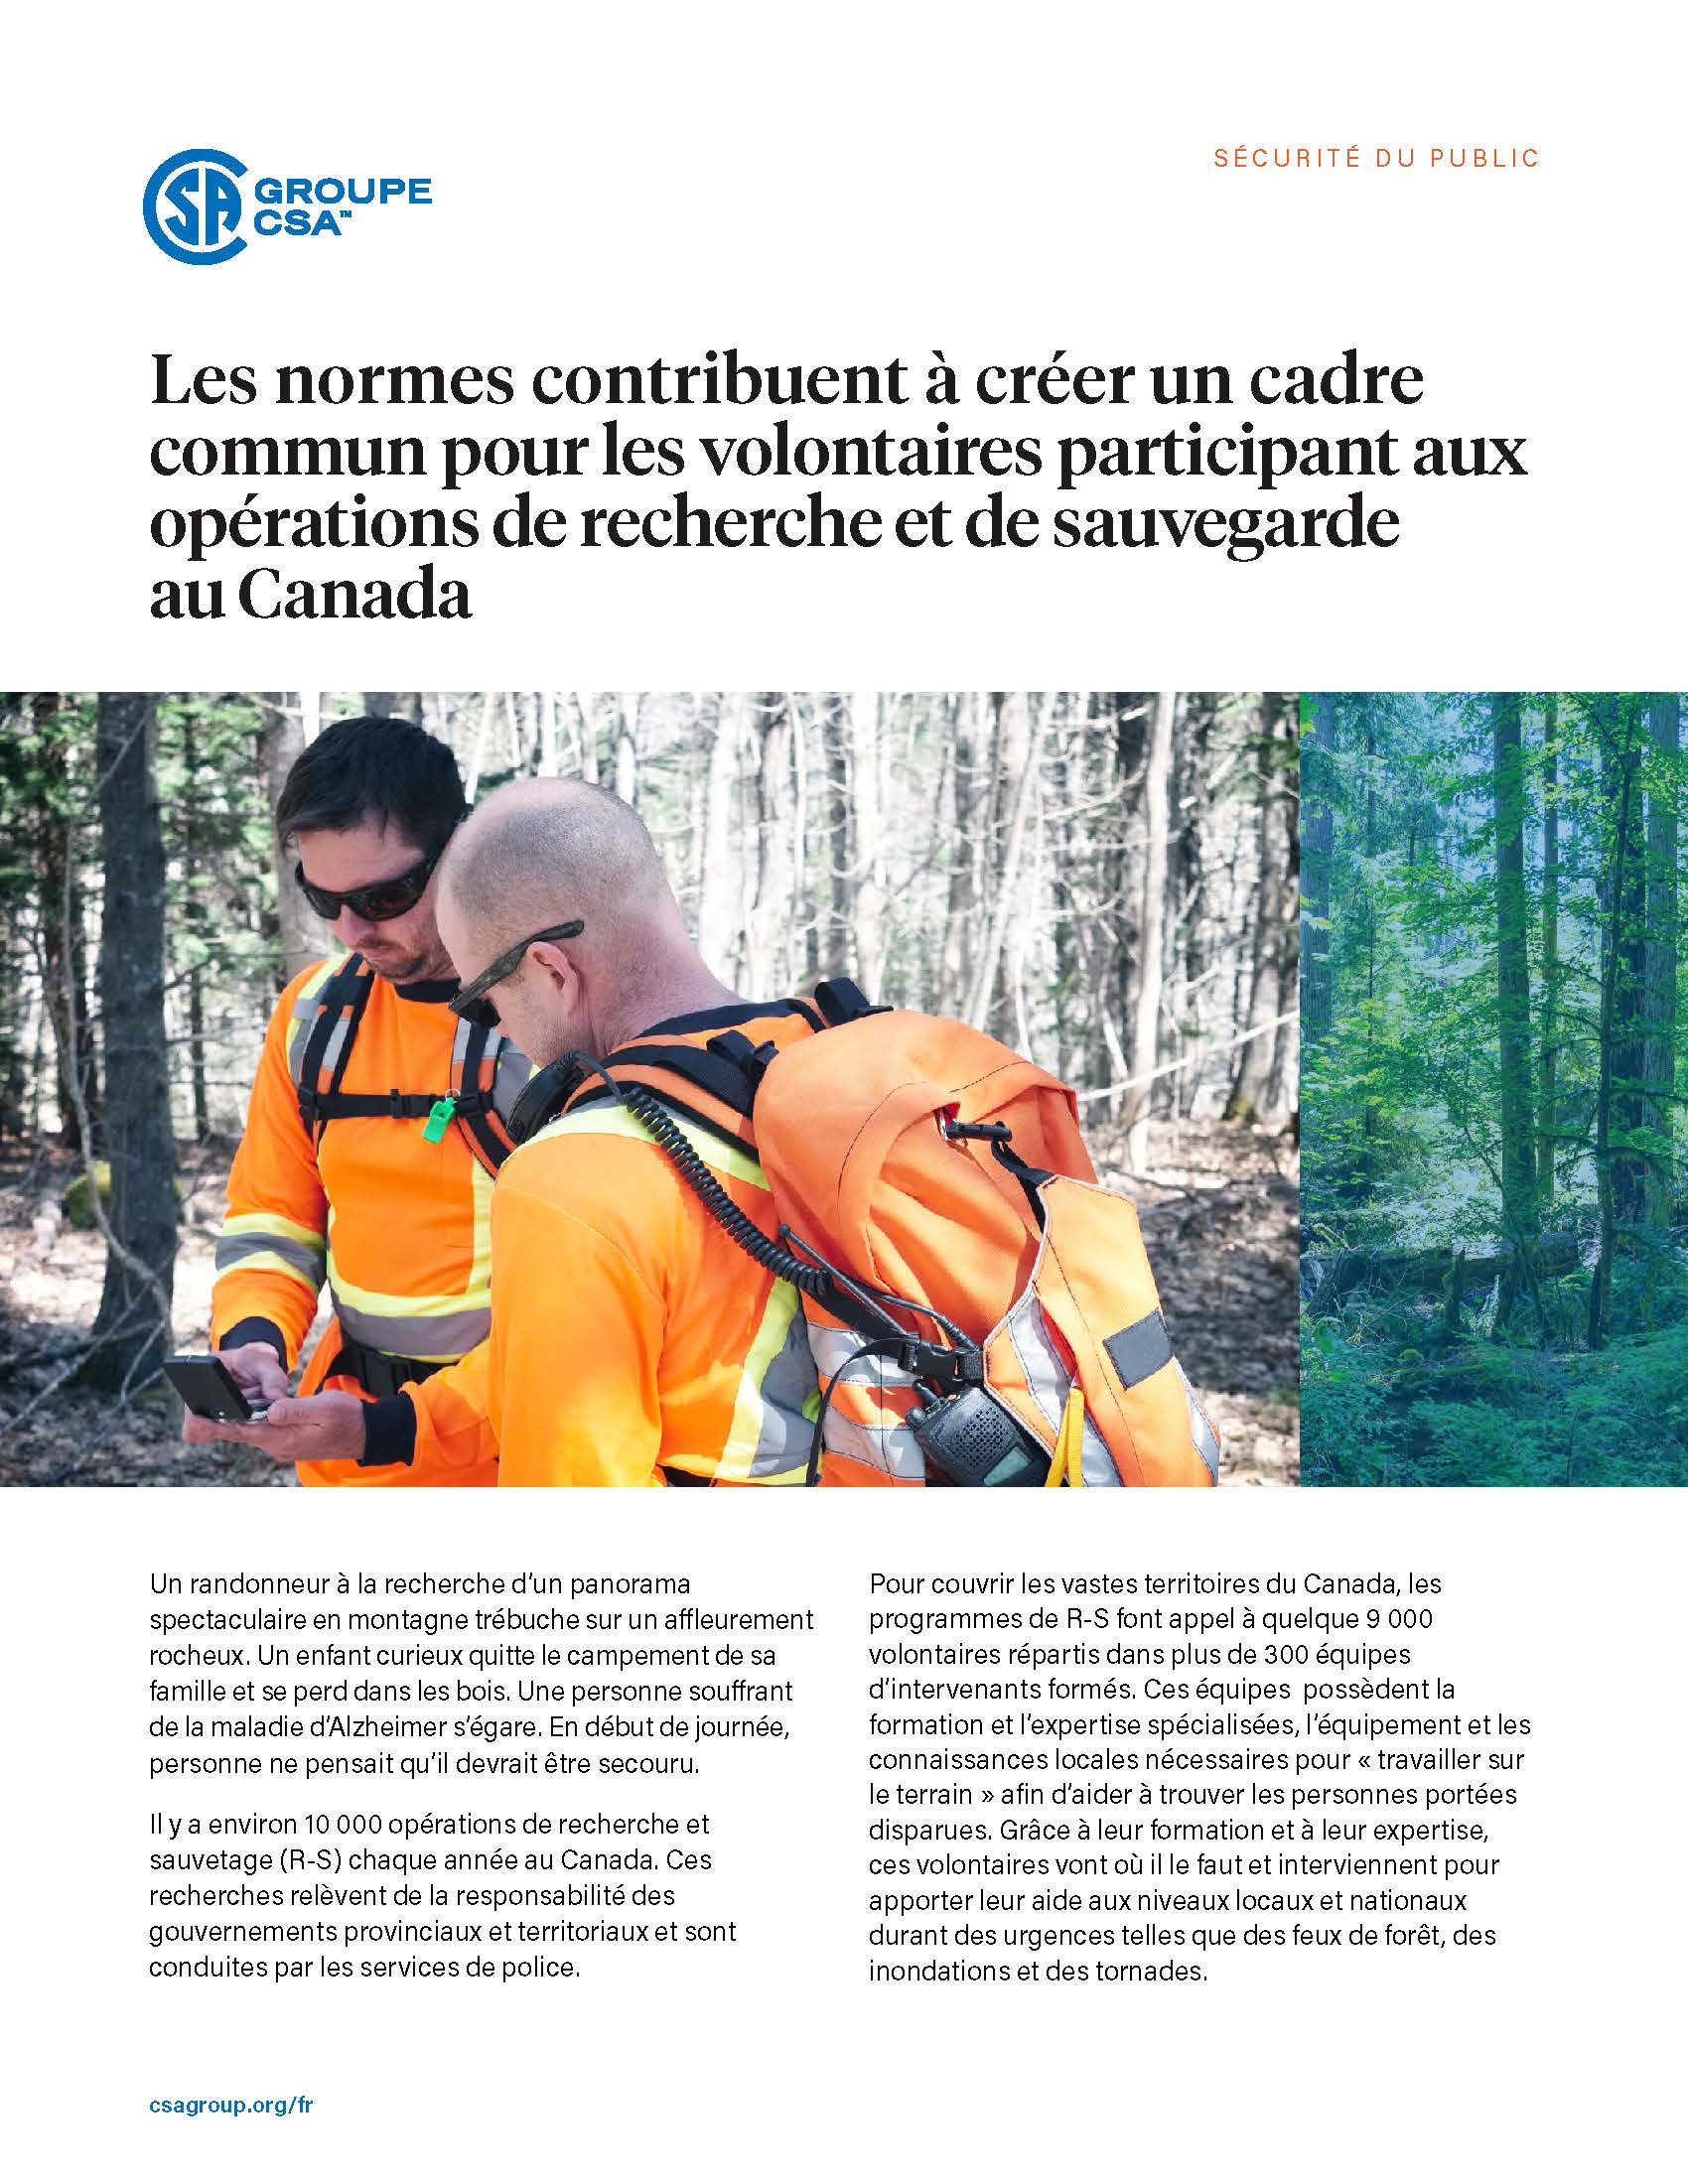 Featured Image. Les normes contribuent à créer un cadre commun pour les volontaires participant aux opérations de recherche et de sauvegarde au Canada.